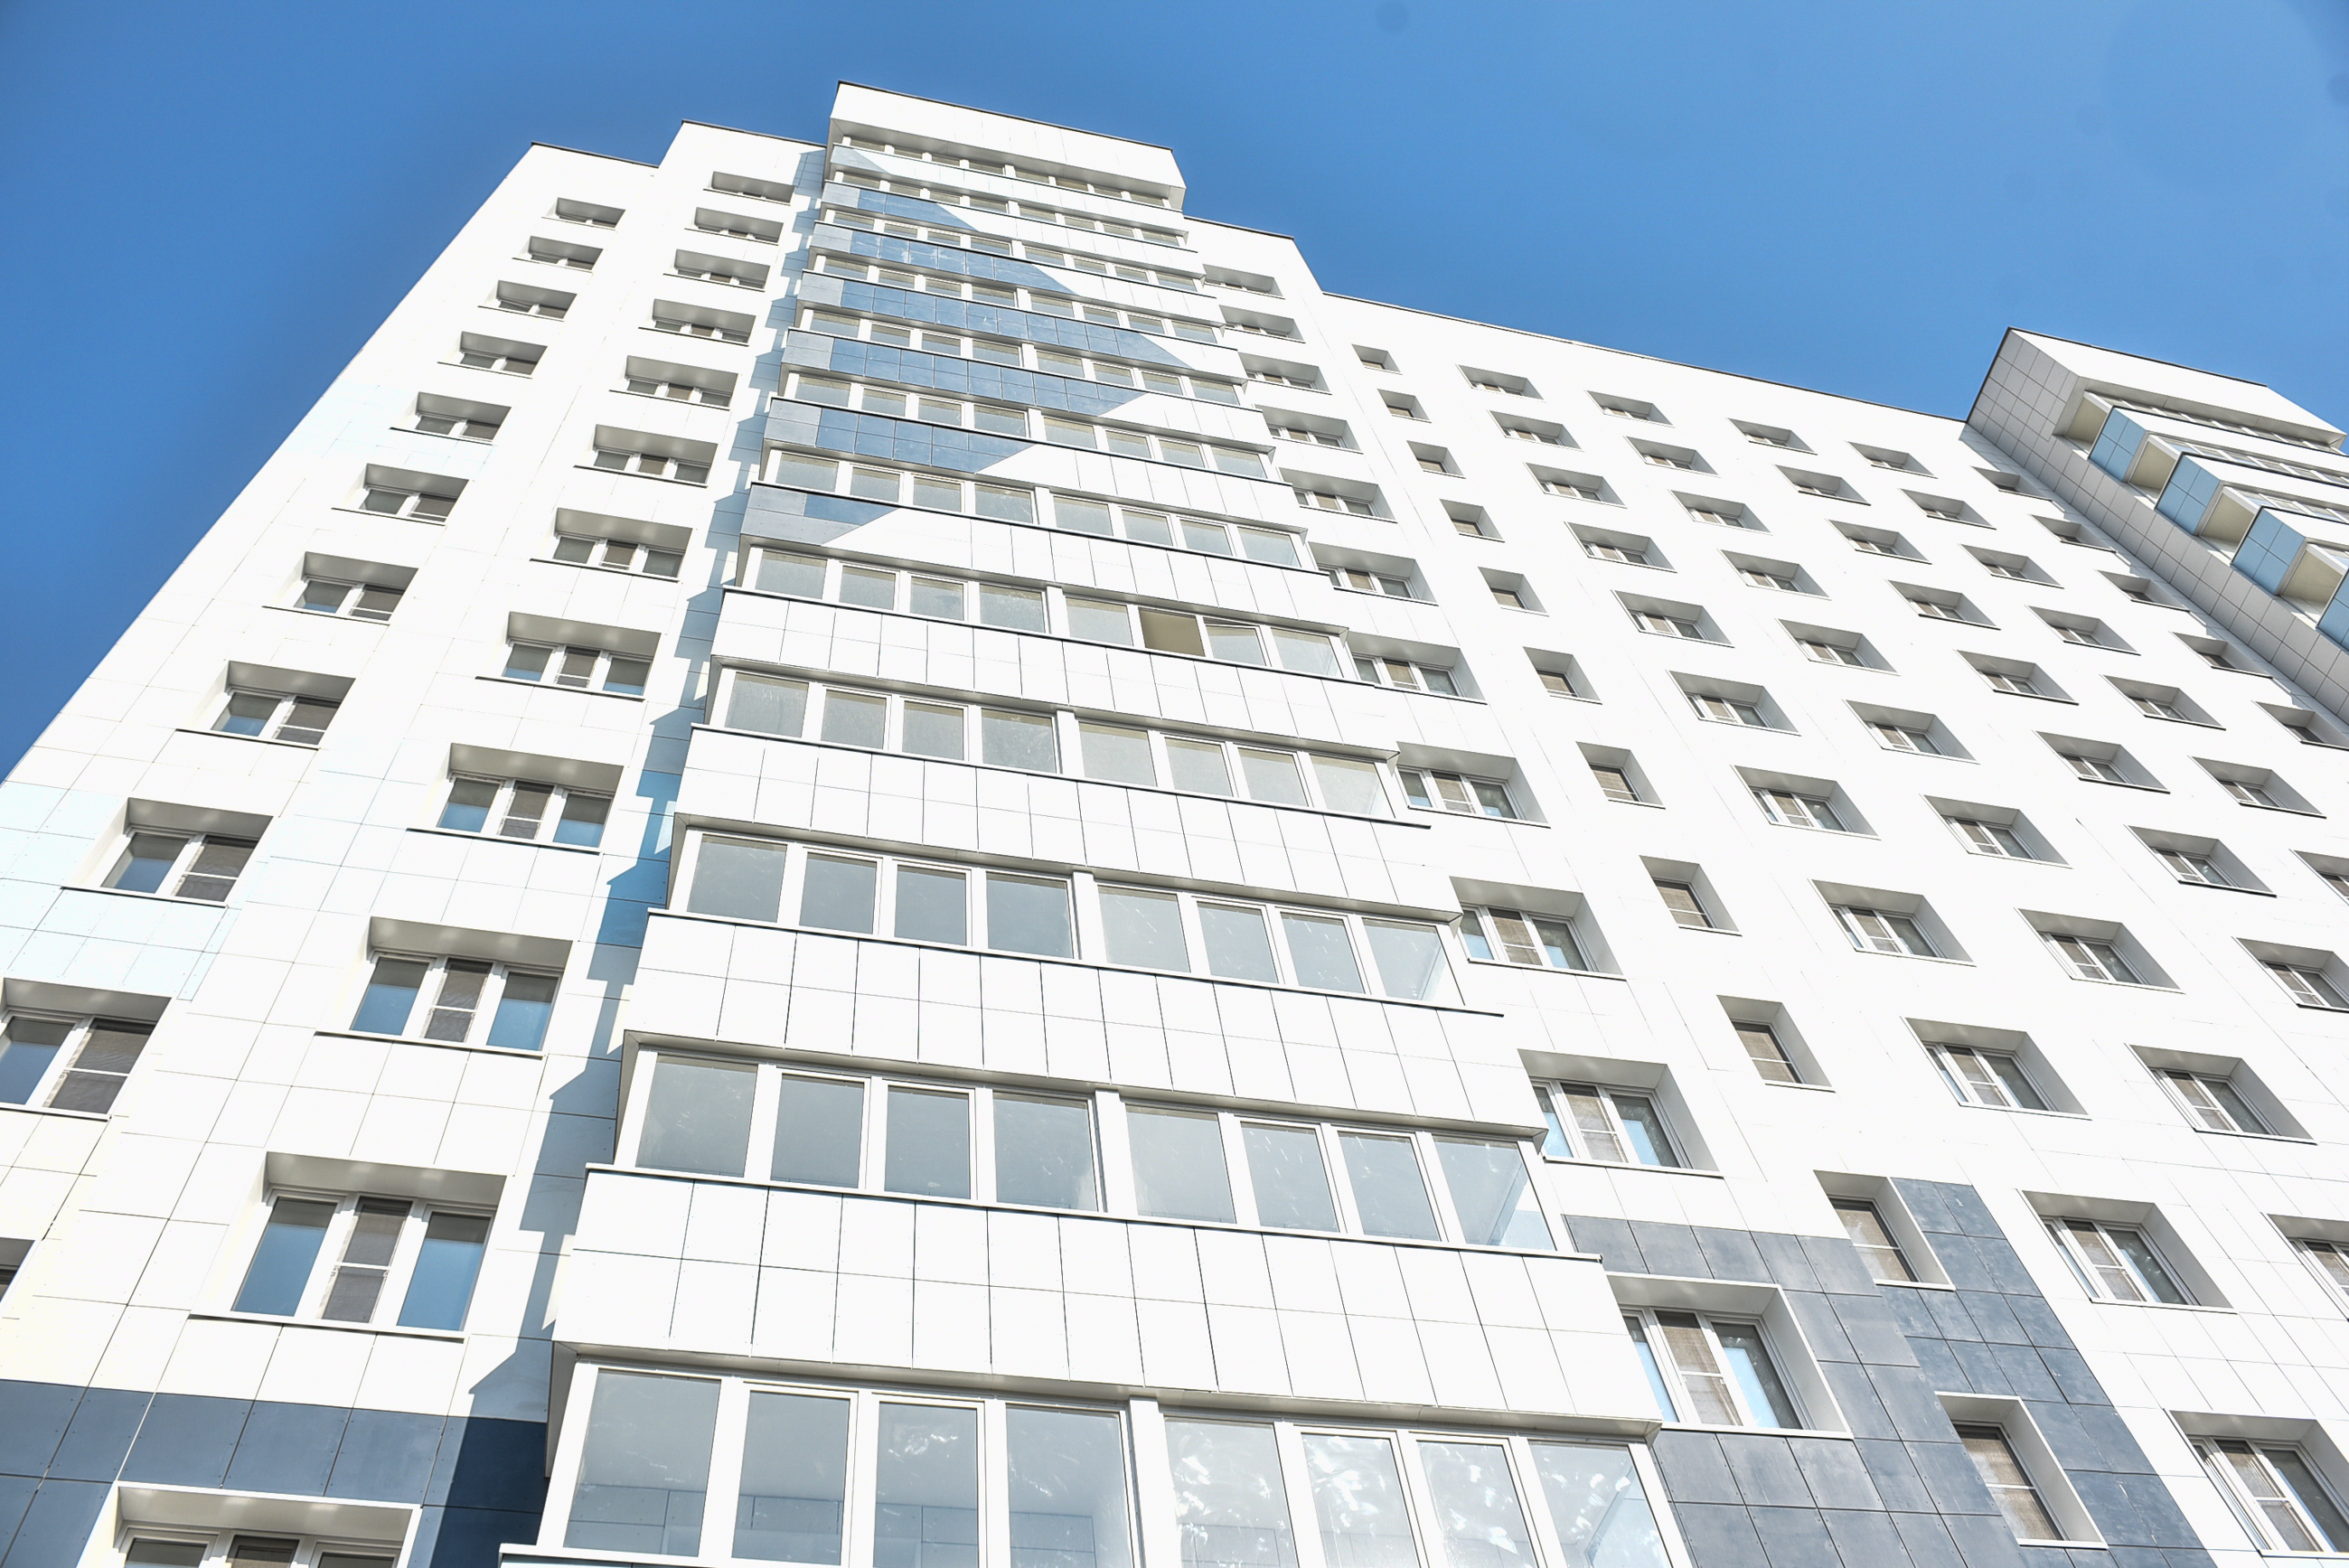 Порядка двух миллионов квадратных метров недвижимости введут в эксплуатацию в Новой Москве в 2018 году. Фото: архив, «Вечерняя Москва»